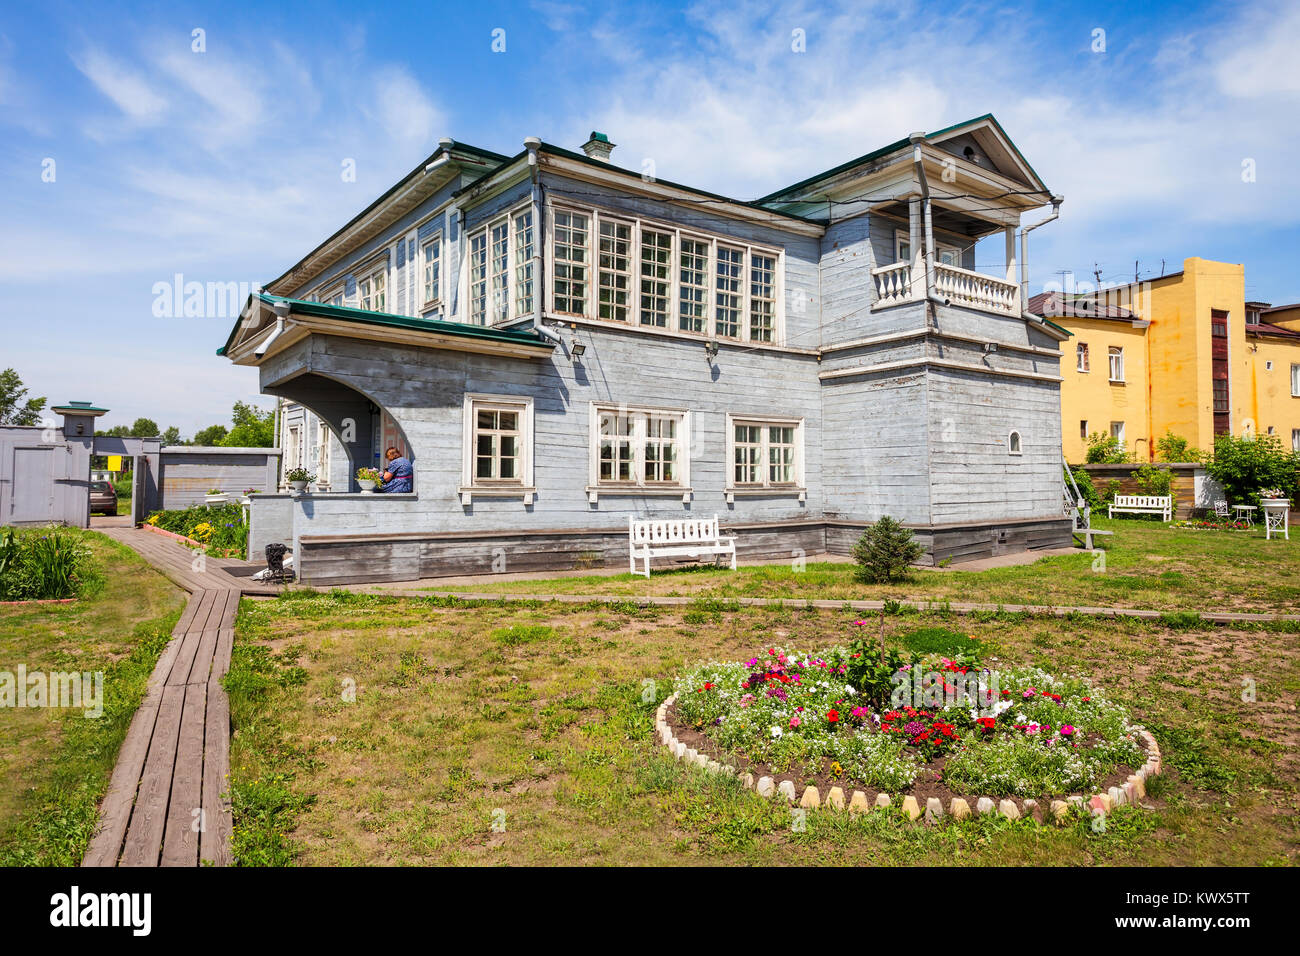 Historique régional d'Irkoutsk et Memorial Musée des Décembristes ou maison Volkonsky dans le centre de ville d'Irkoutsk, Russie Banque D'Images